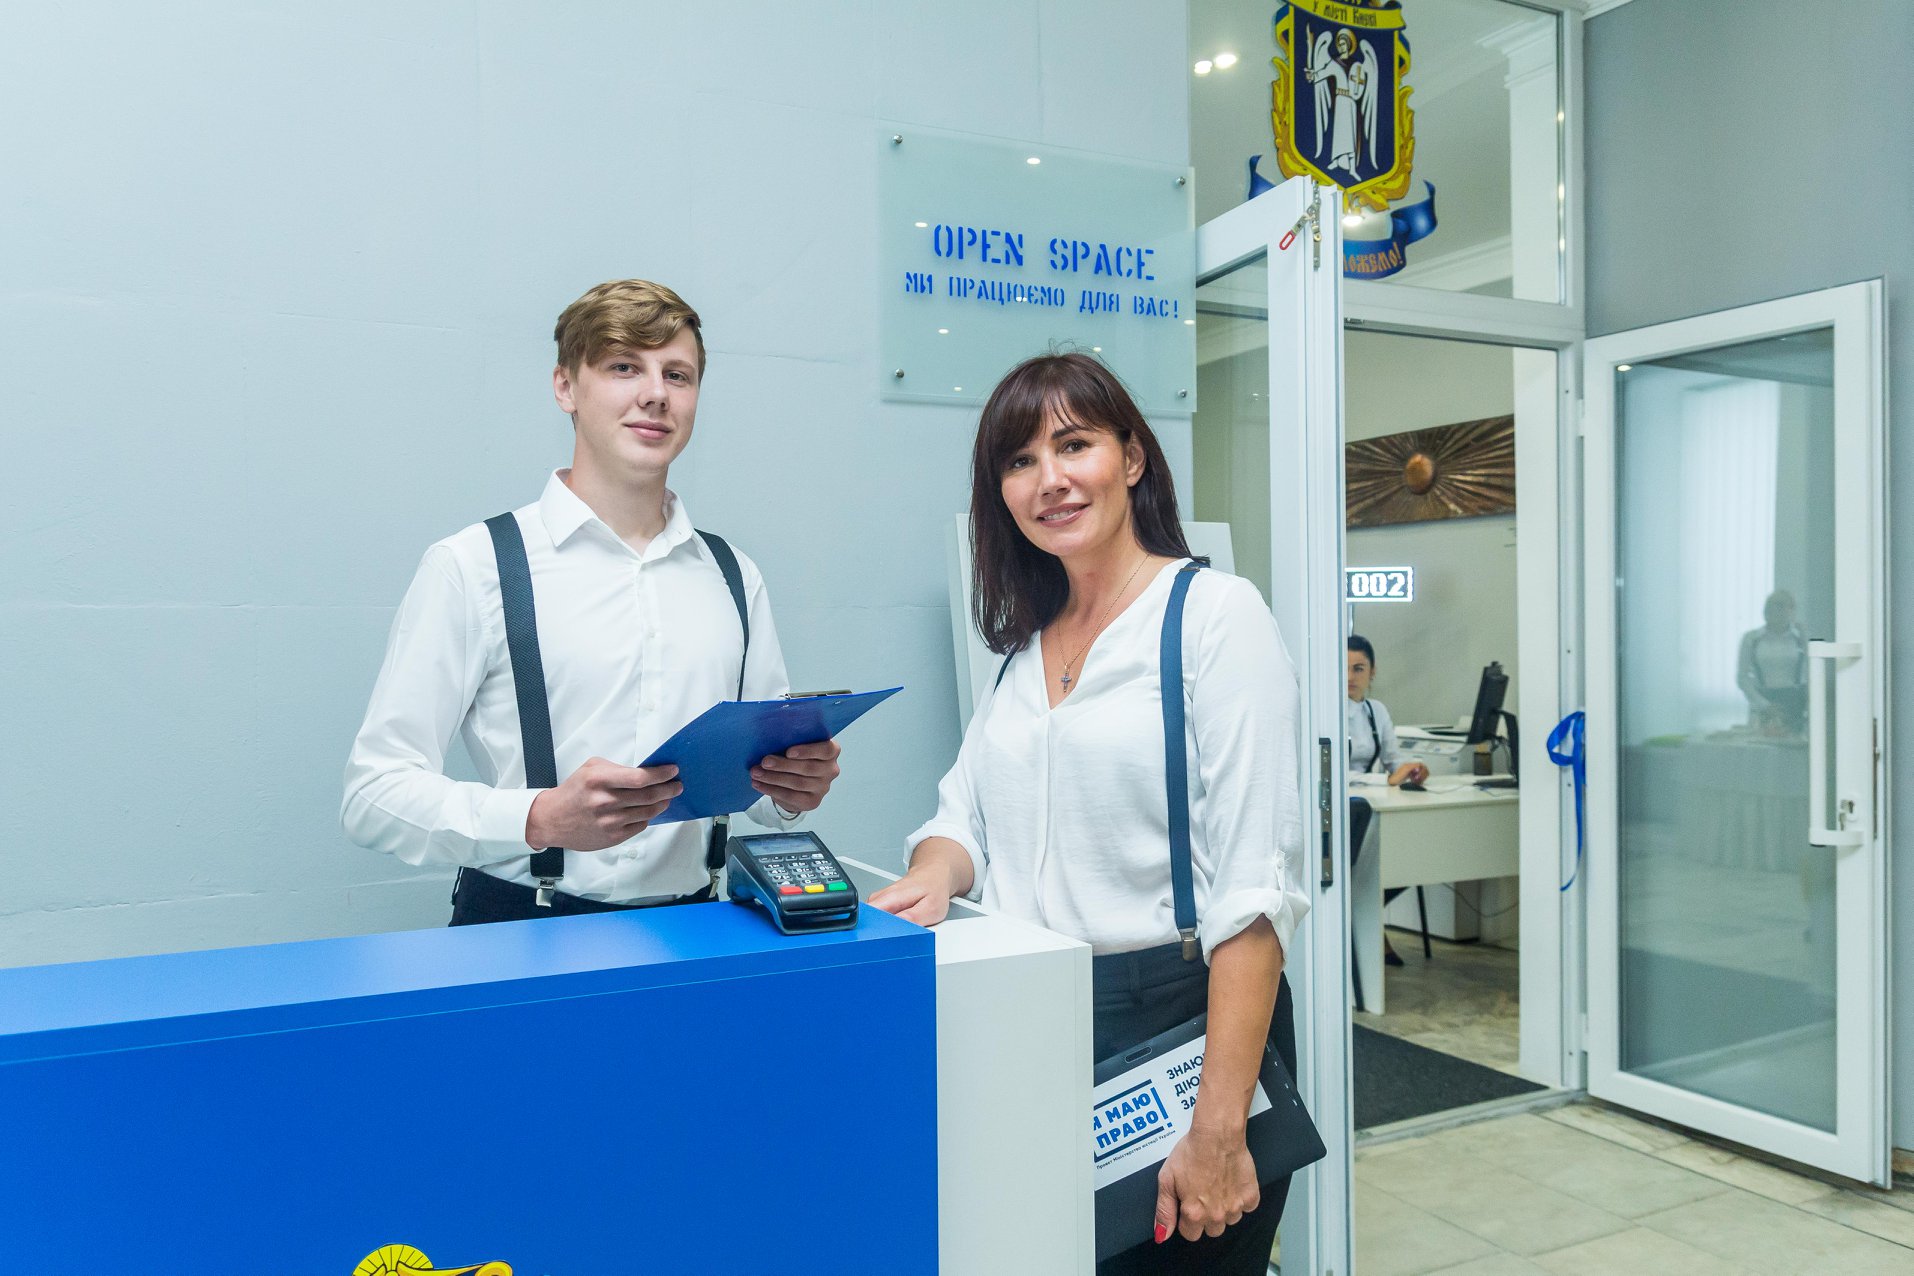 В Днепровском районе Киева открыли центр услуг по госрегистрации актов гражданского состояния по принципу “единого окна” (фото)